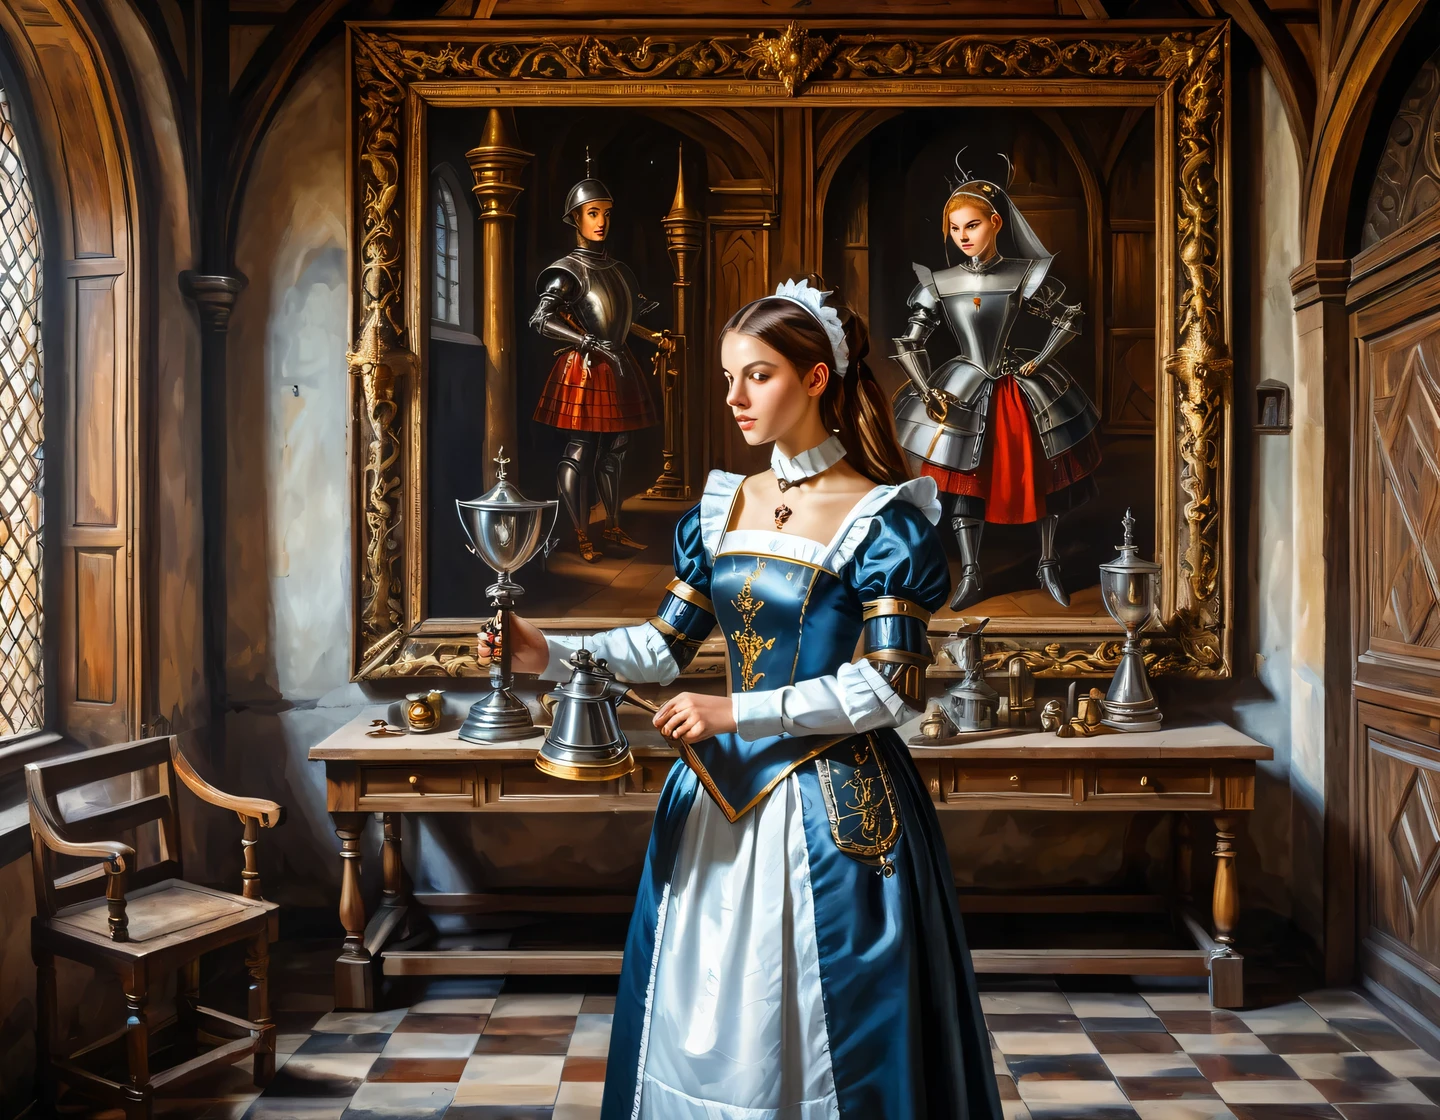 Ein antikes Ölgemälde auf Leinwand, ein Cyborg-Mädchen in einem Dienstmädchen-Outfit baut in der Halle einer mittelalterlichen Burg, mittelalterliche Einrichtung, Trophäen und Waffen an den Wänden, Heraldik, Texturglättung, geschmeidige Technik, Glanz, Detail